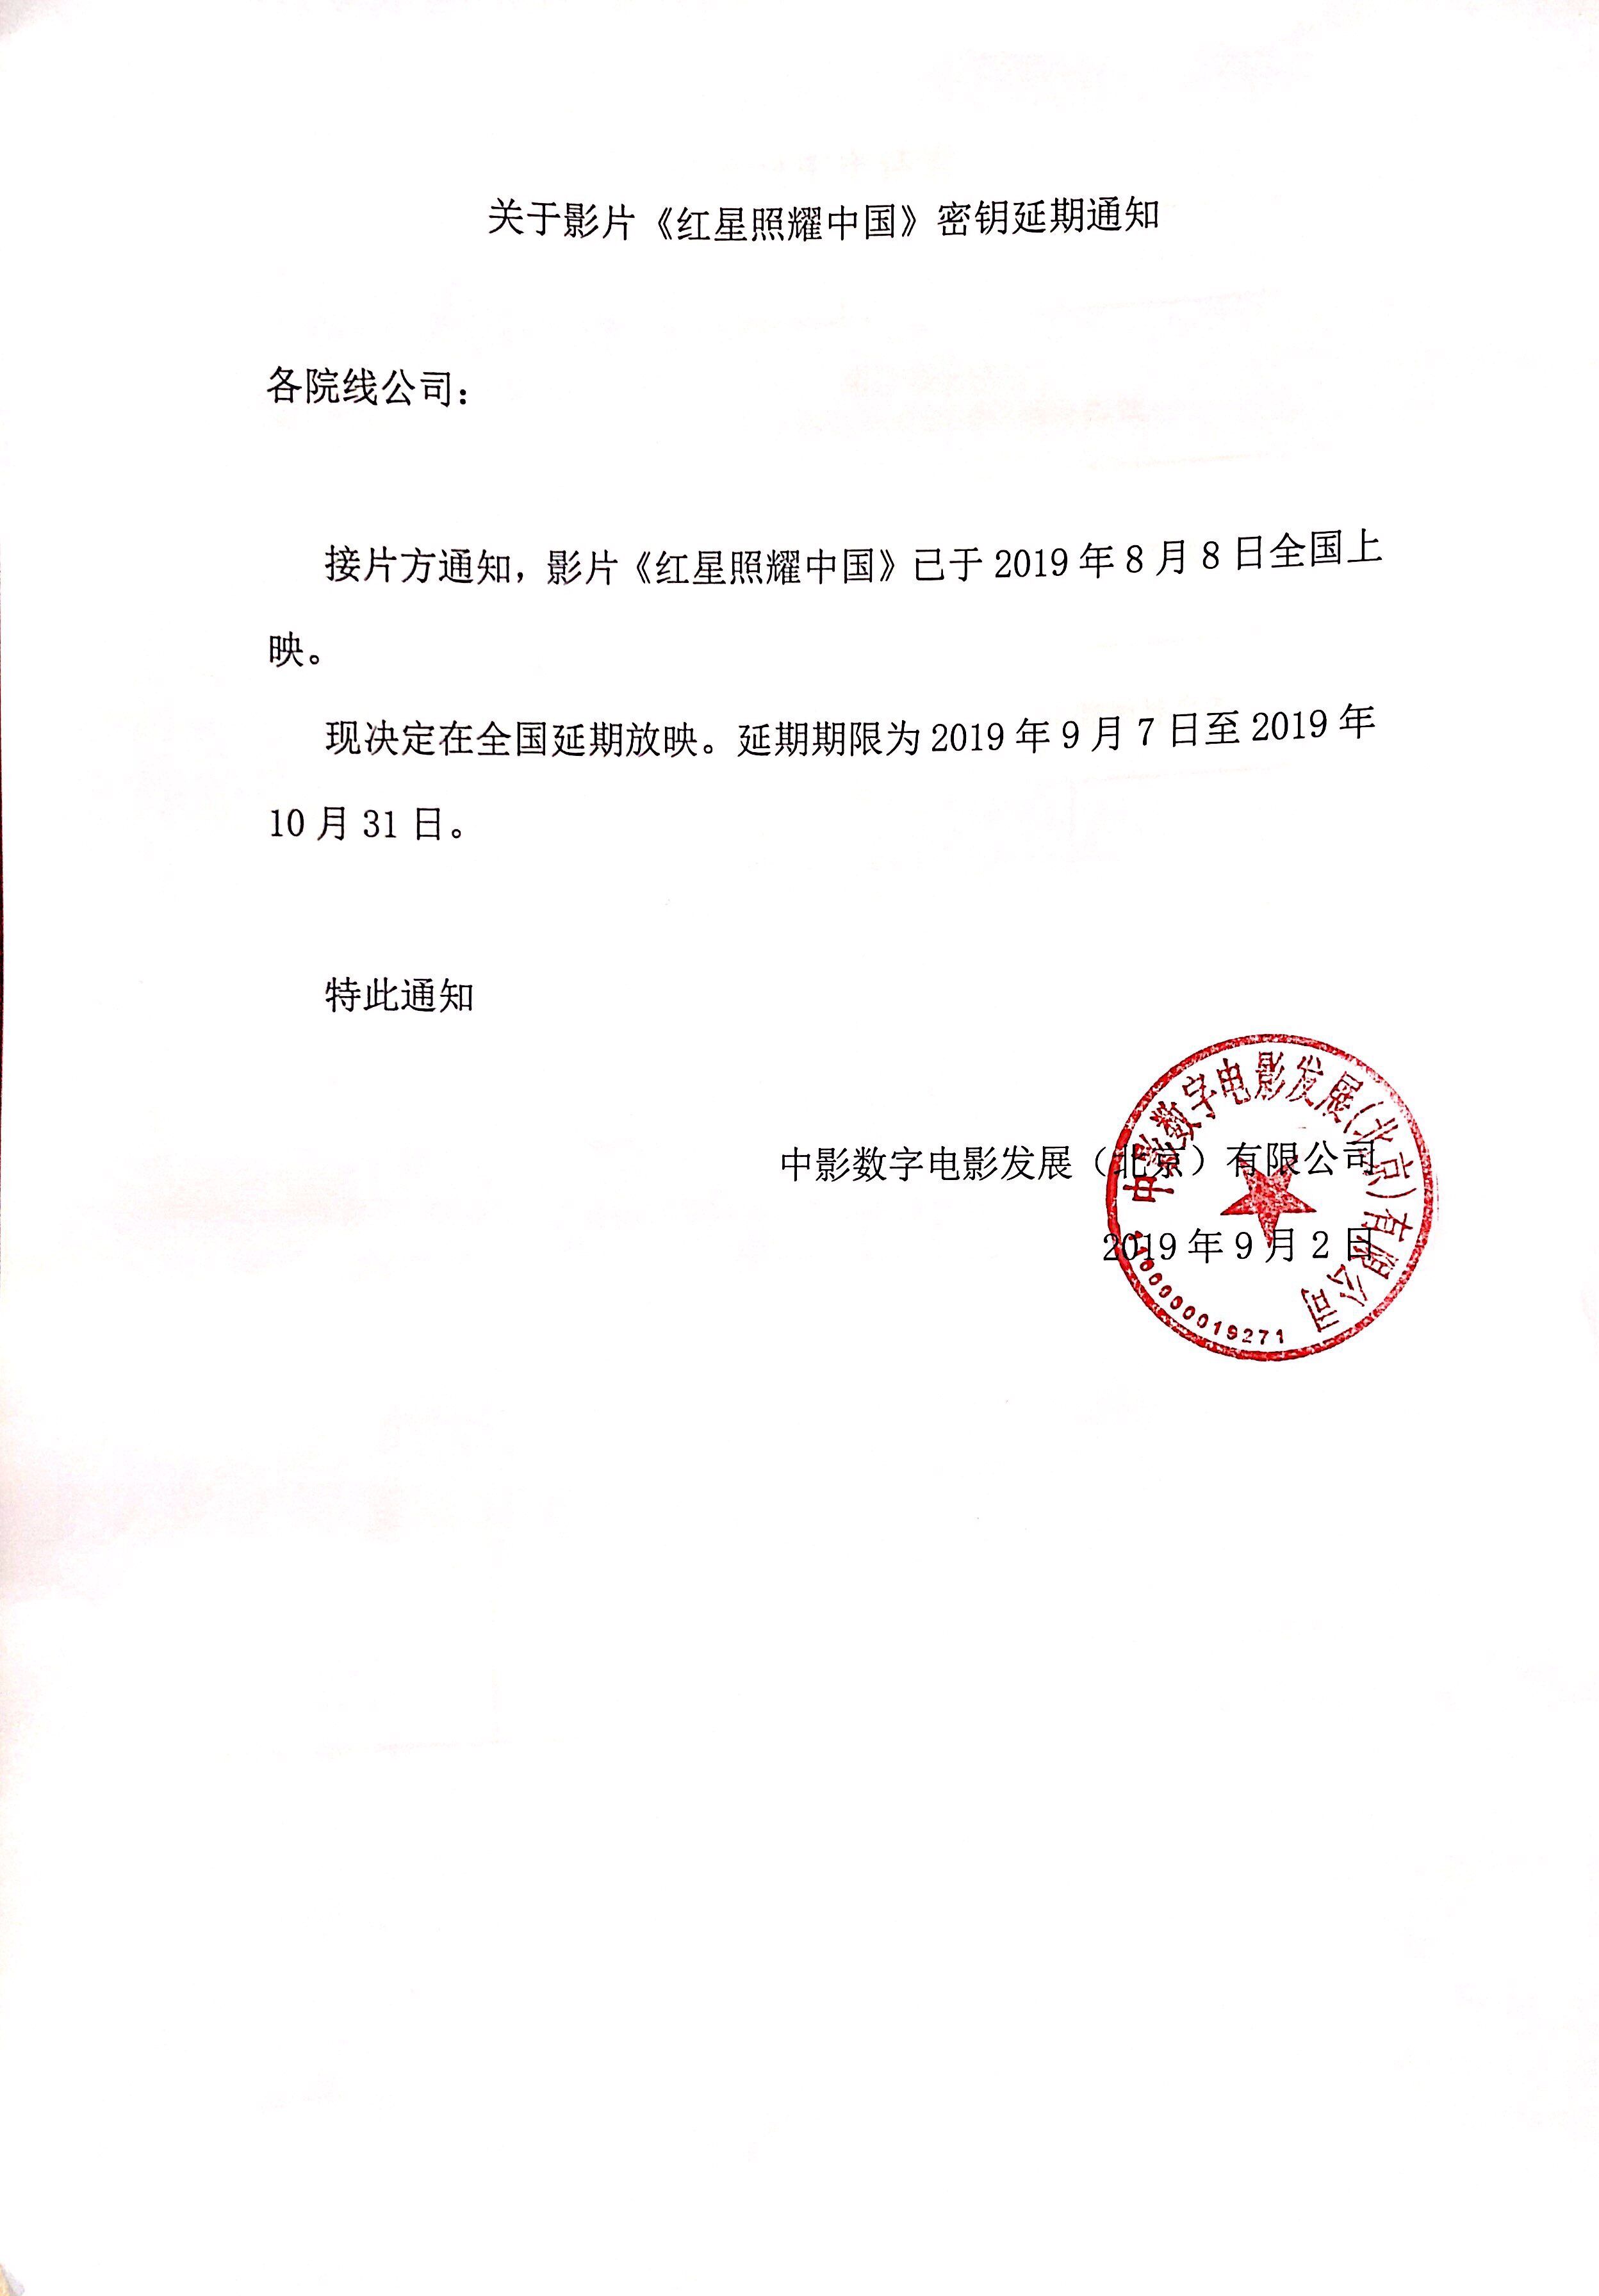 关于影片《红星照耀中国》密钥延期的通知